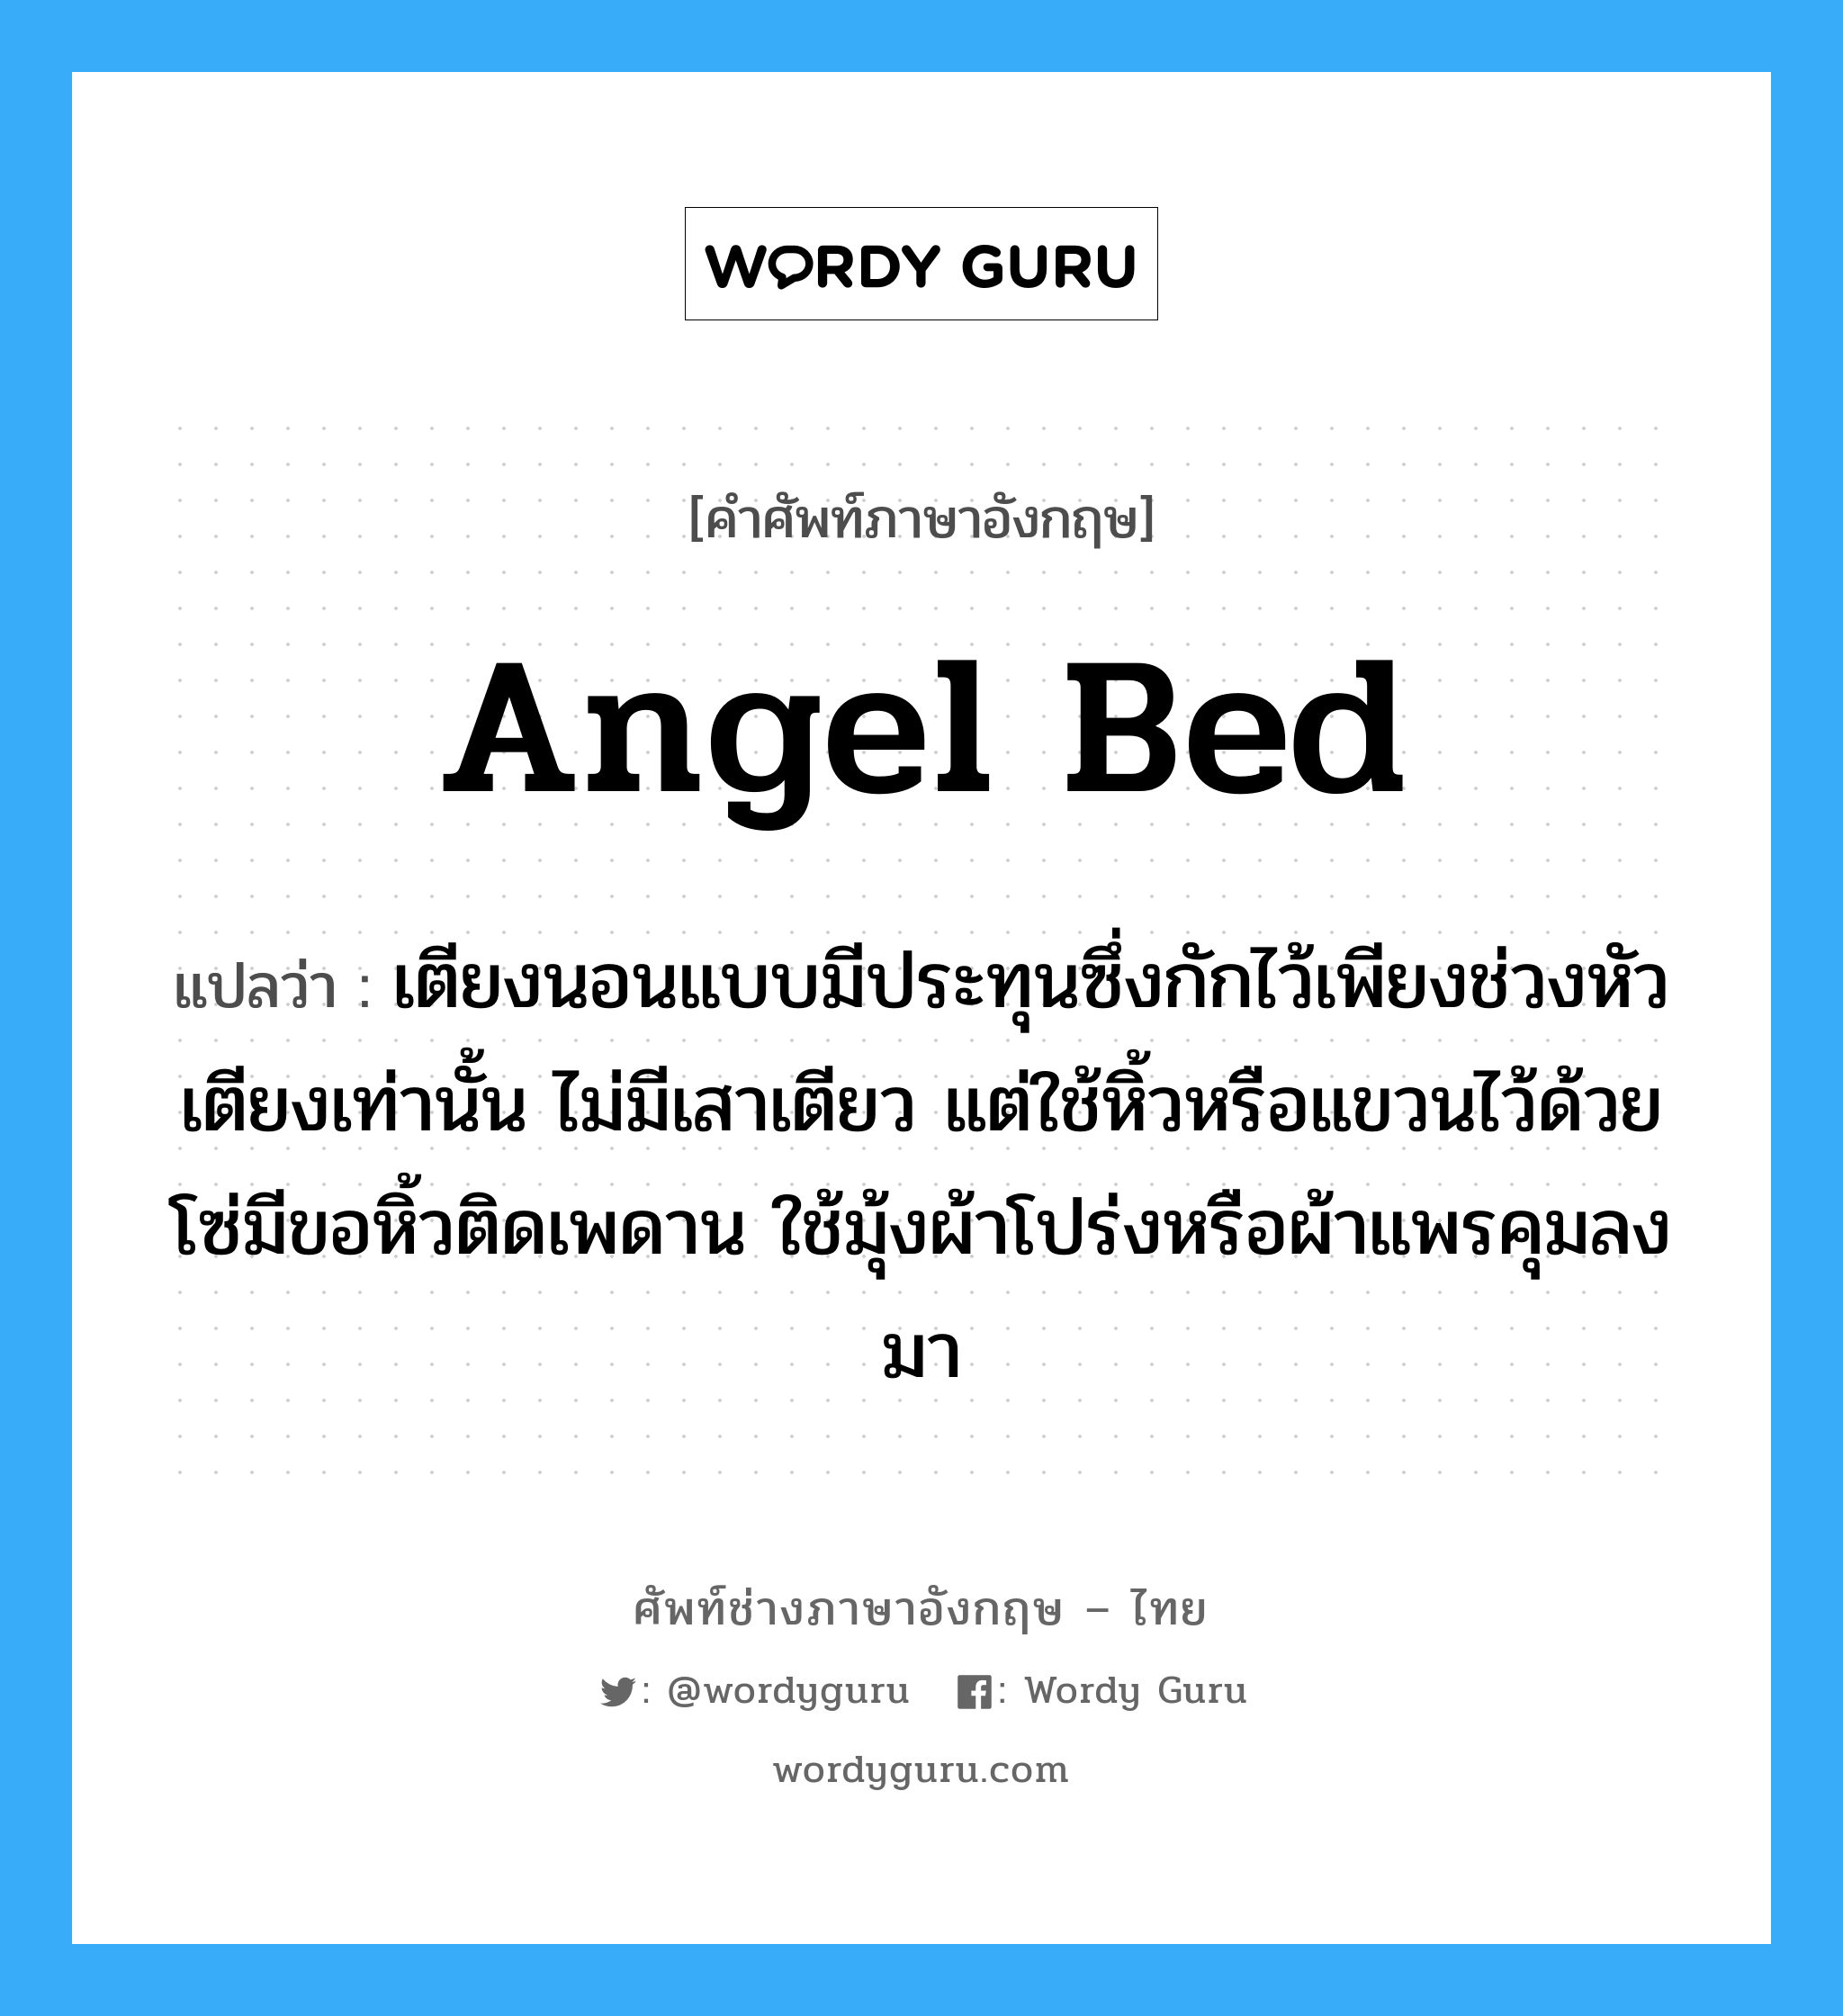 angel bed แปลว่า?, คำศัพท์ช่างภาษาอังกฤษ - ไทย angel bed คำศัพท์ภาษาอังกฤษ angel bed แปลว่า เตียงนอนแบบมีประทุนซึ่งกักไว้เพียงช่วงหัวเตียงเท่านั้น ไม่มีเสาเตียว แต่ใช้หิ้วหรือแขวนไว้ด้วยโซ่มีขอหิ้วติดเพดาน ใช้มุ้งผ้าโปร่งหรือผ้าแพรคุมลงมา